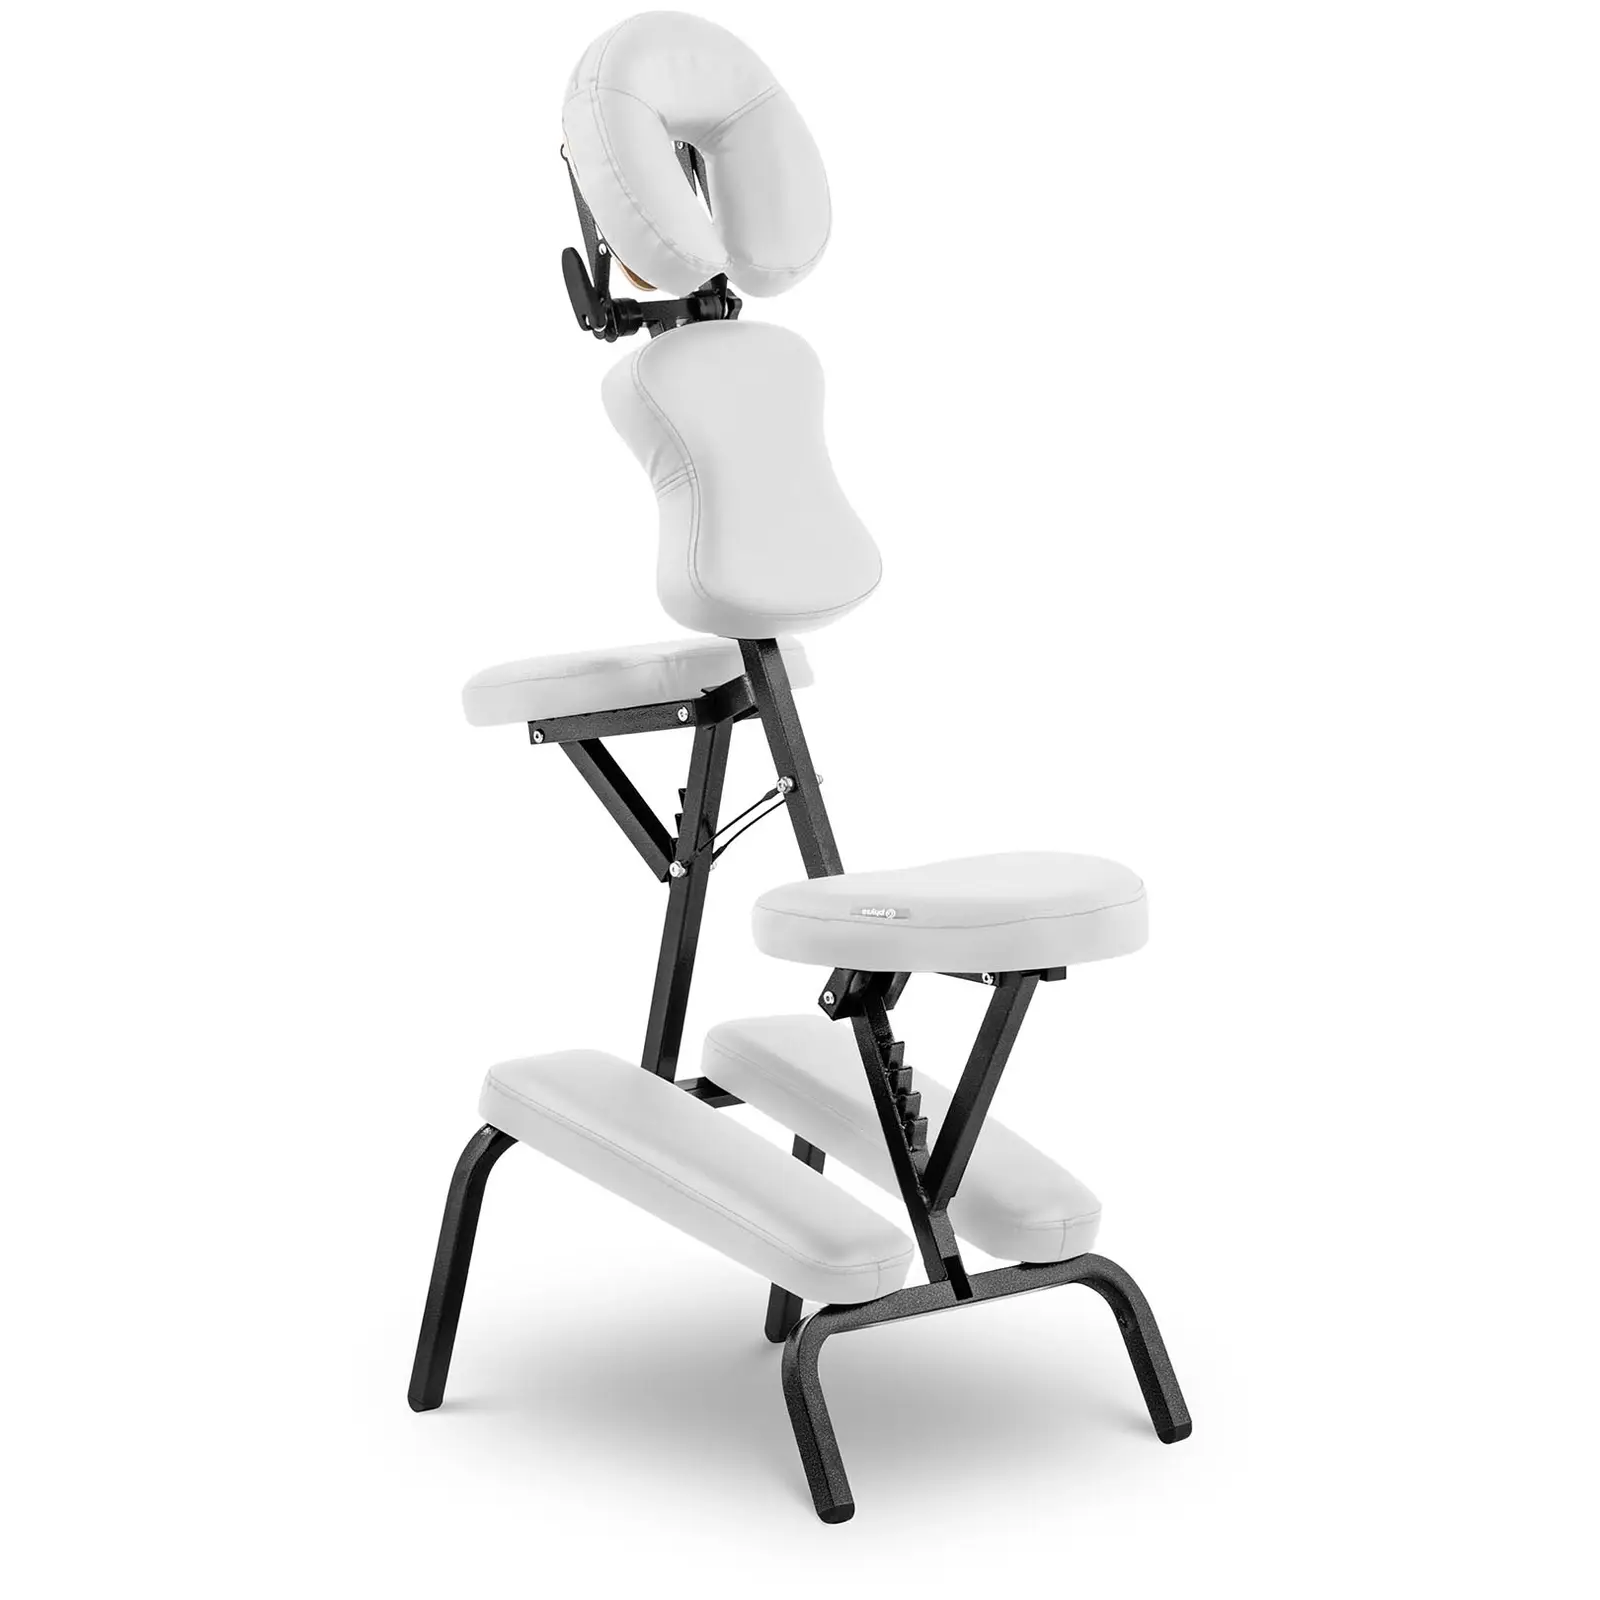 Massagestuhl klappbar - 26 x 46 x 104 cm - 130 kg - Weiß